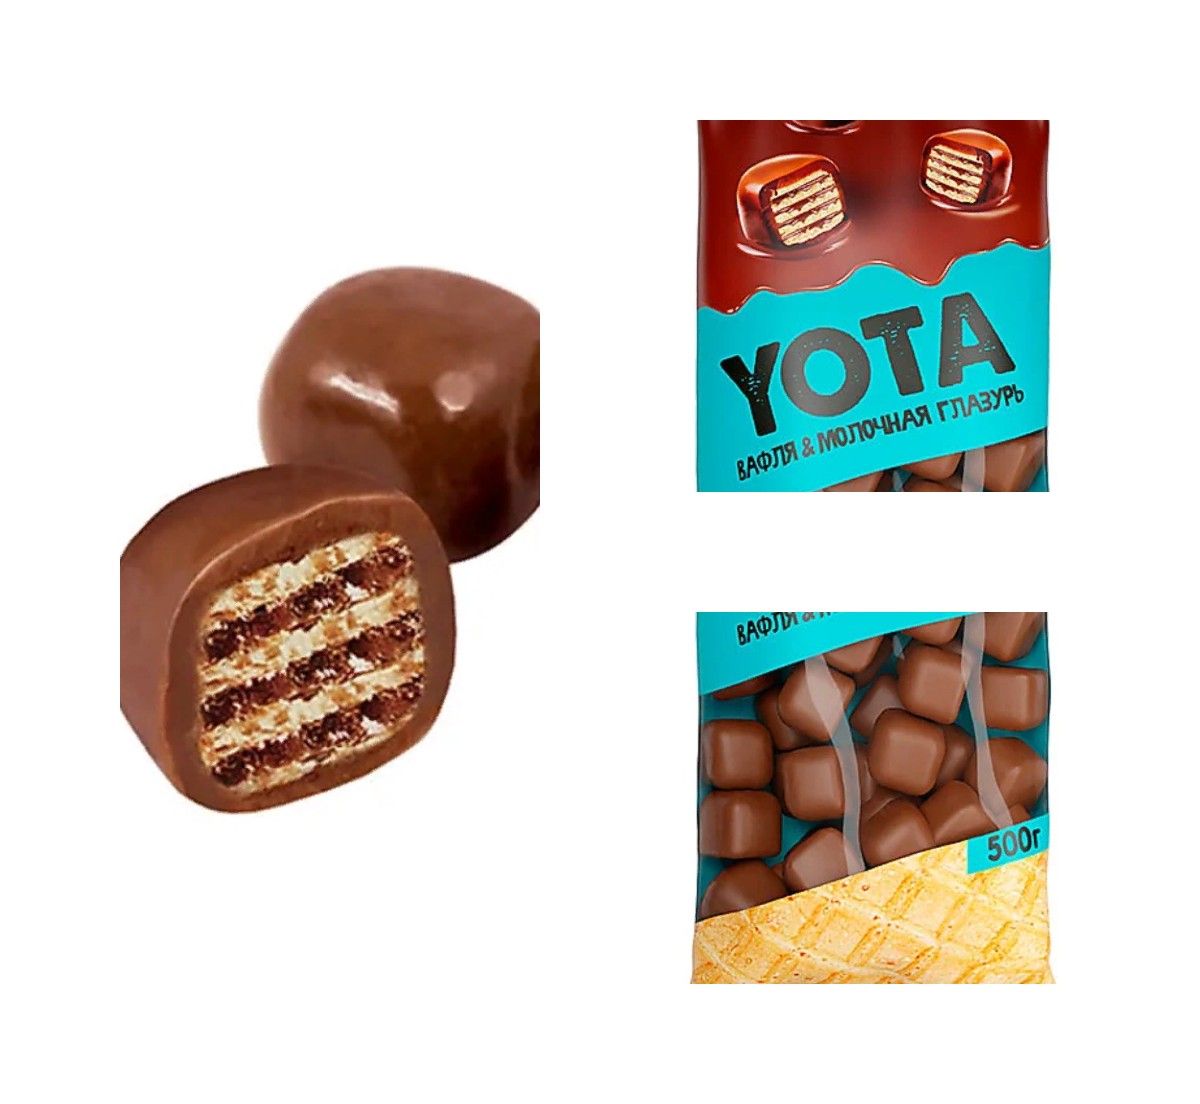 Драже вафельный кубик. «Yota», драже вафля в молочно-шоколадной глазури. Йота драже вафельное в Молочном шоколаде. Ета вафельные шарики. Вафельные драже